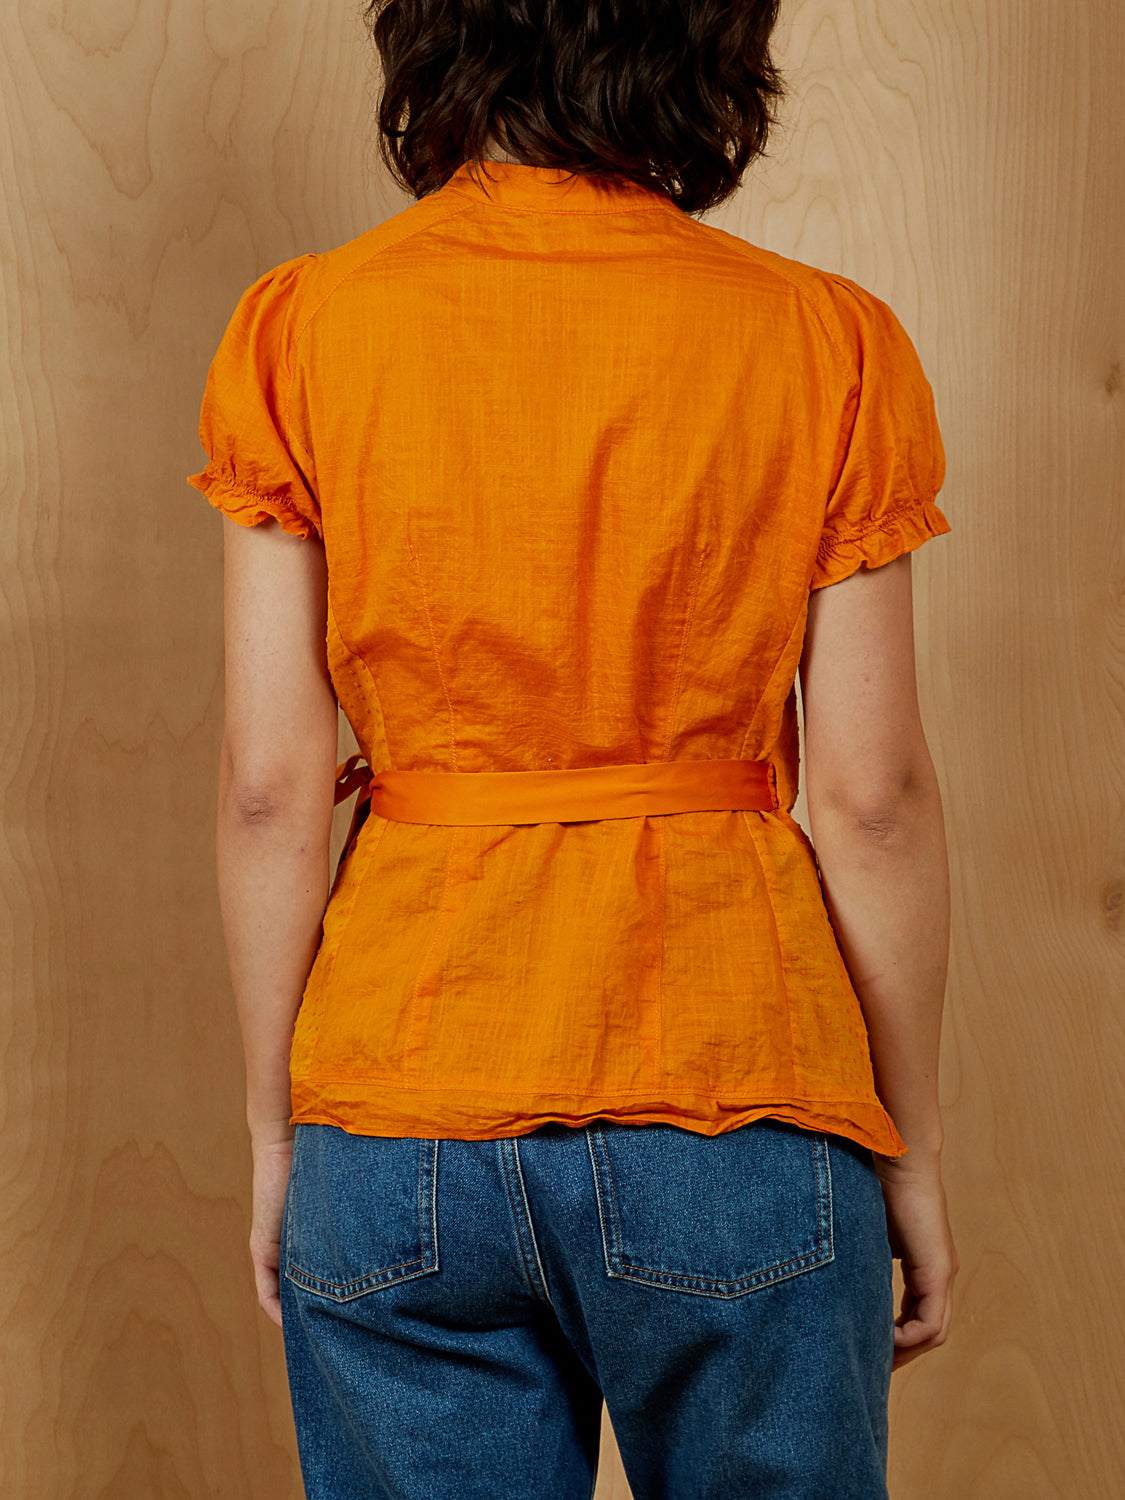 Edme & Esyllte Orange Wrap Shirt